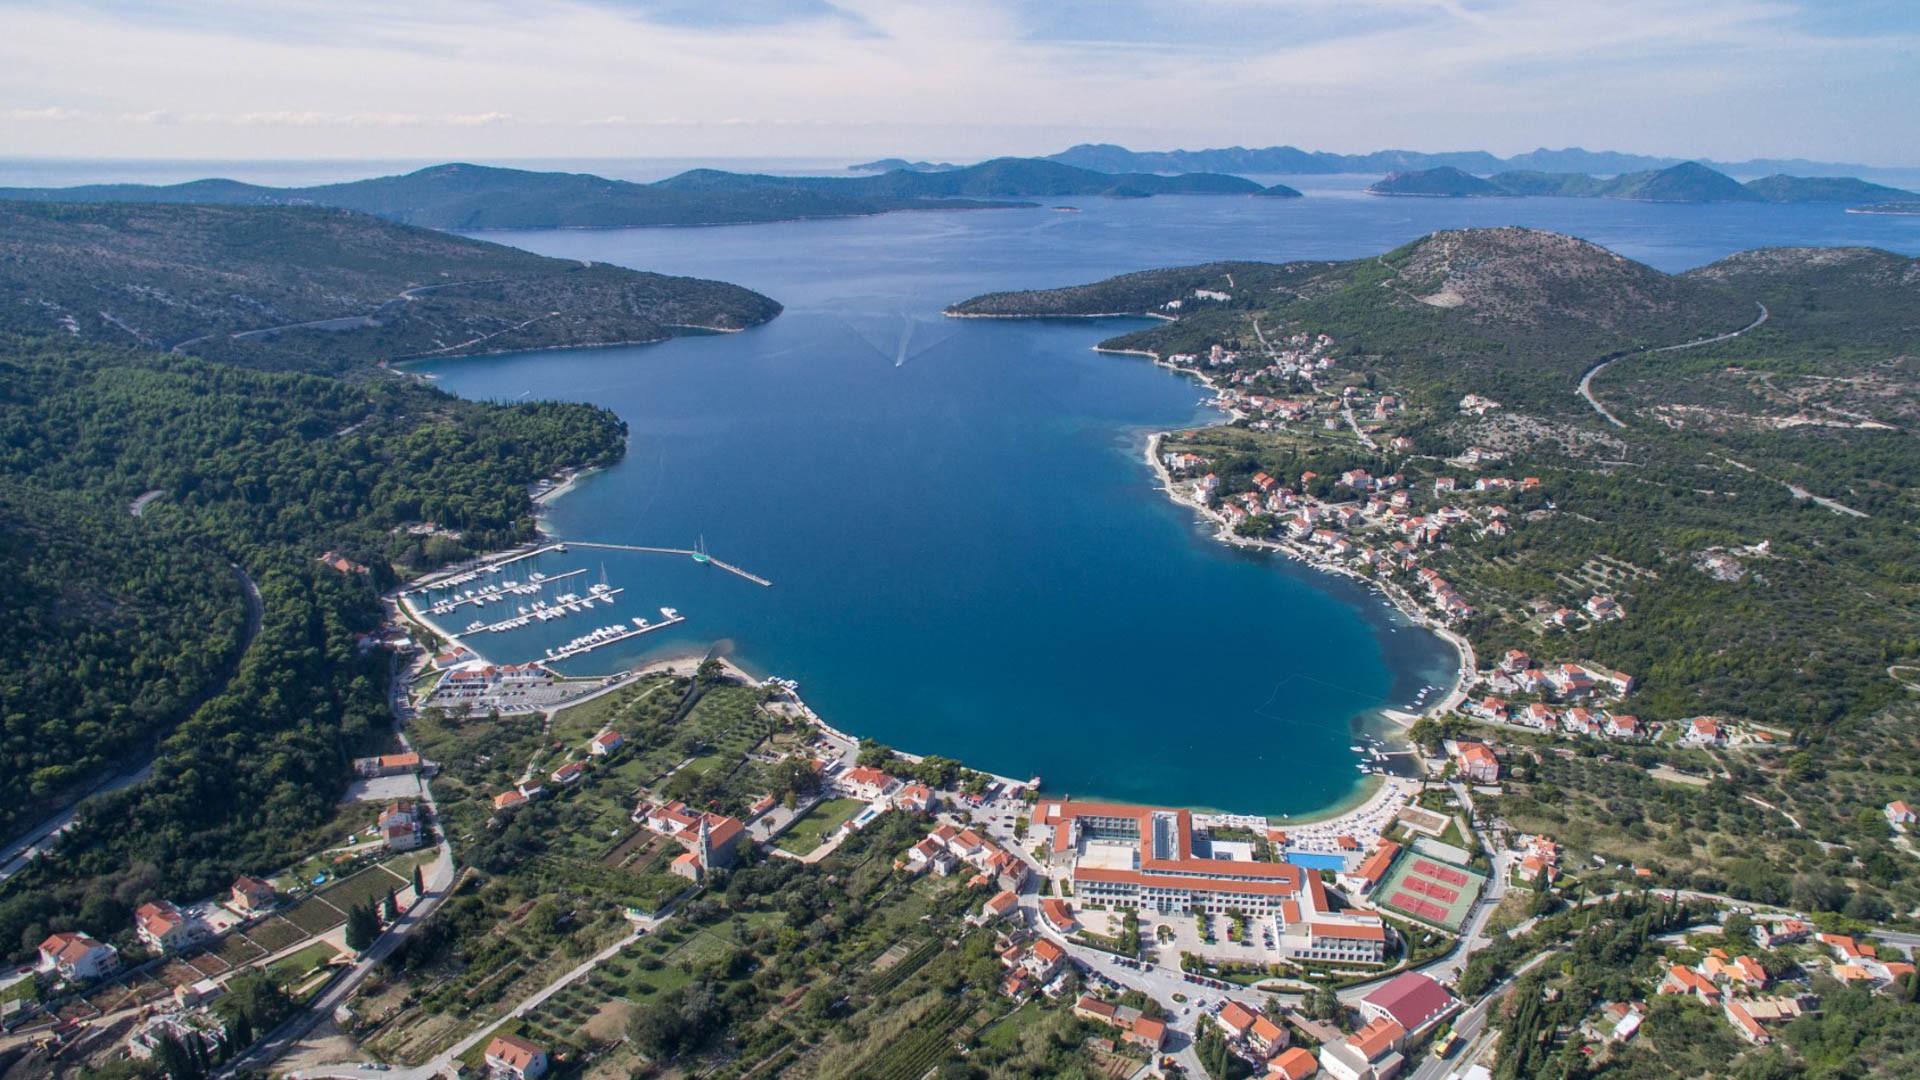 Slano - Adriatic Sea | Croatia Cruise Croatia Cruise